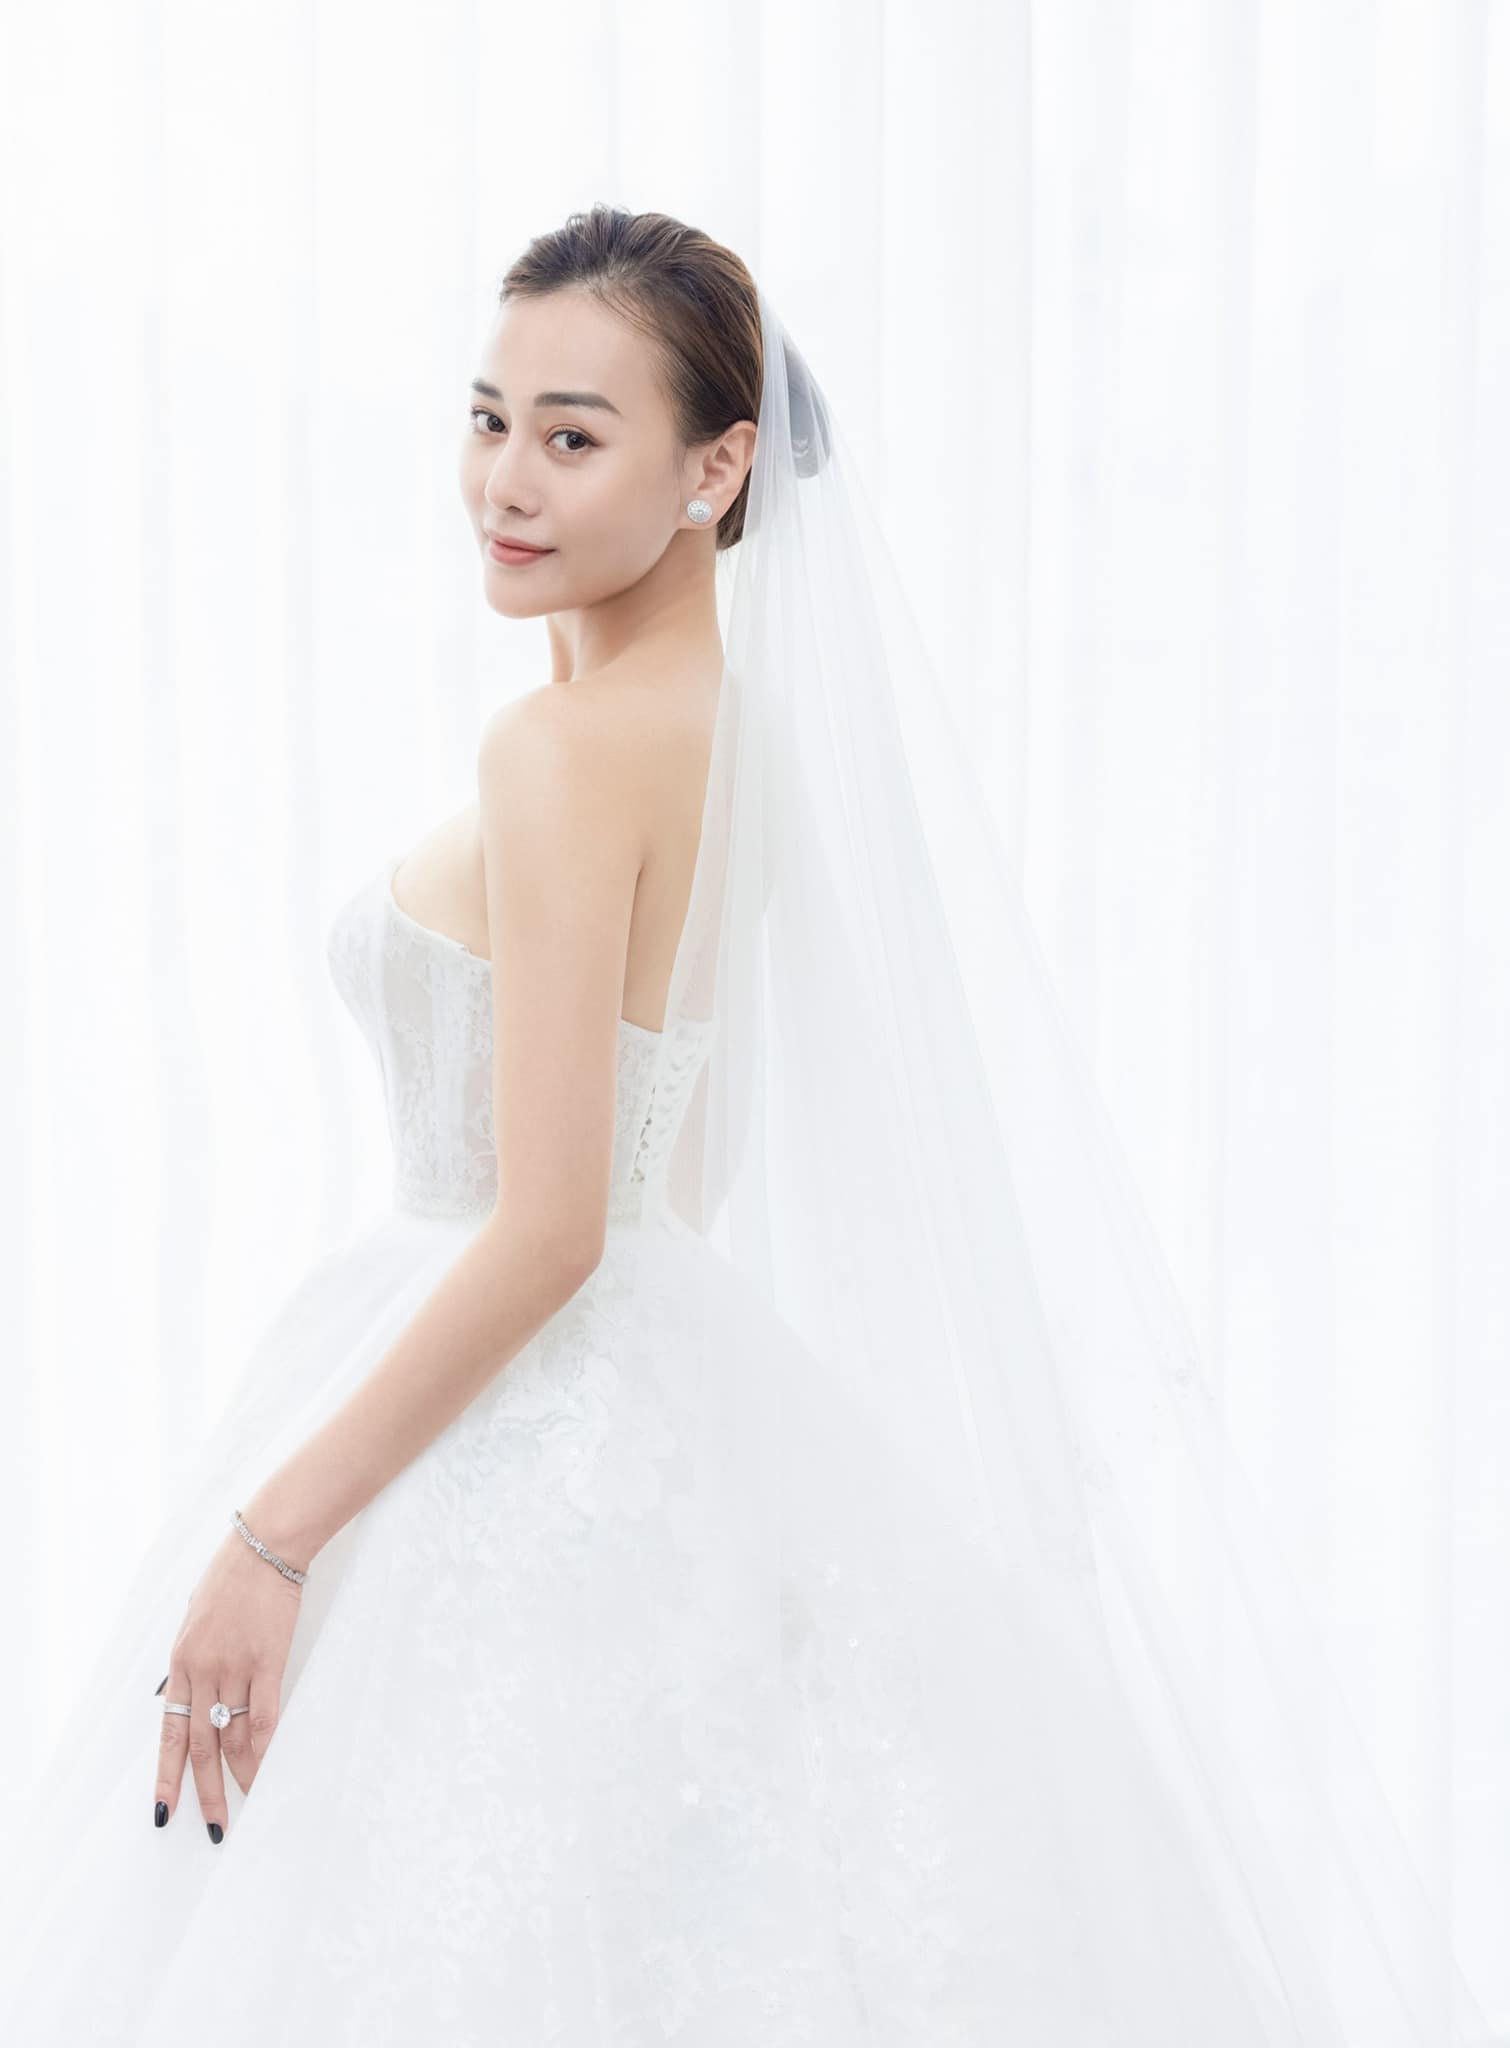 Cô dâu Xoài Non diện váy cưới 28 tỷ trong đám cưới Xemesis - 2sao